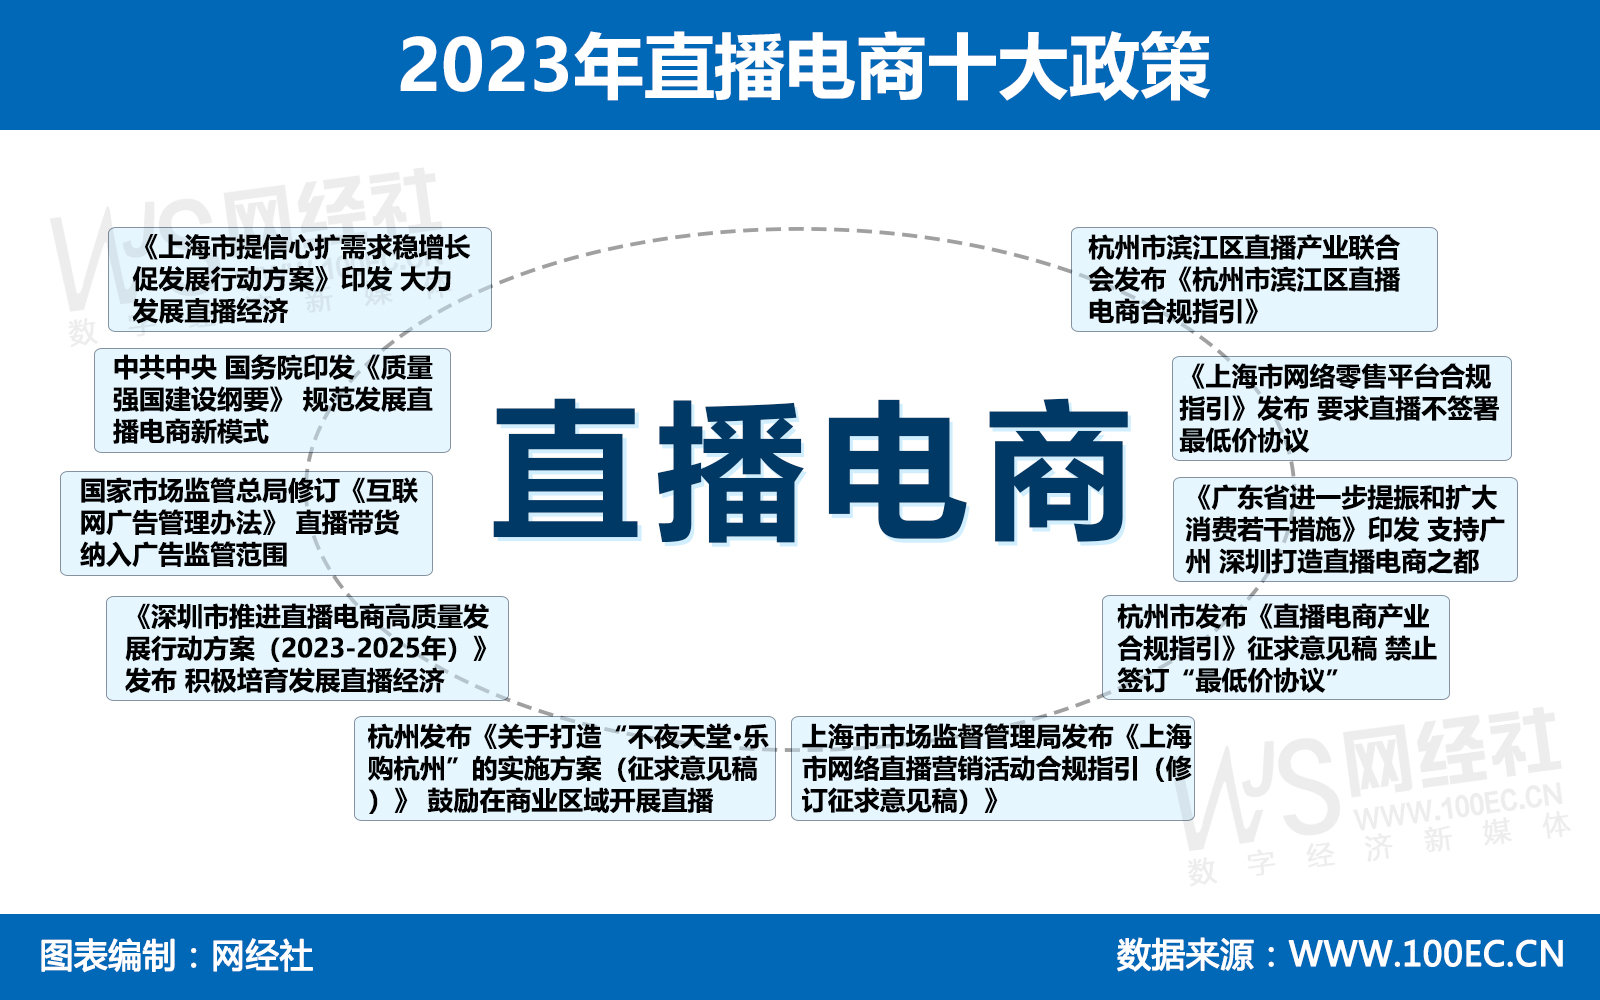 2023年直播电商十大政策.jpg